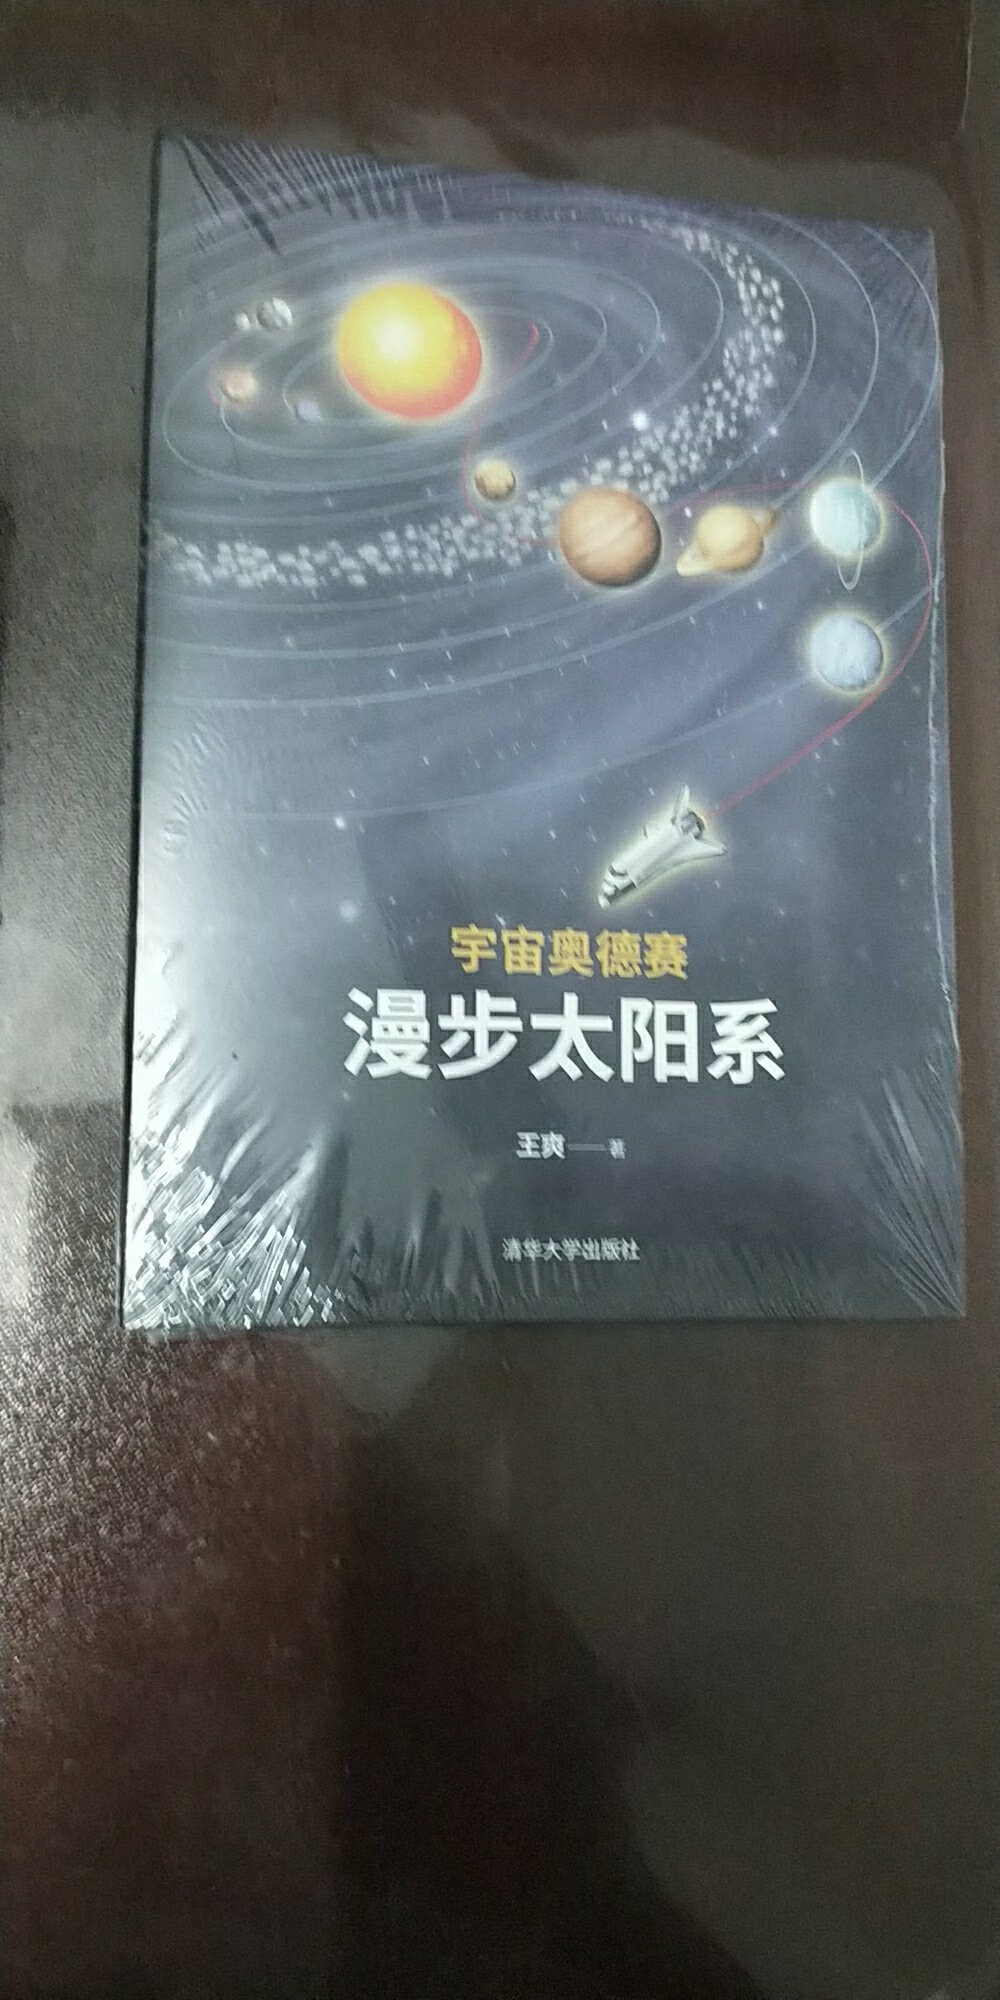 太阳系科普书，包括星体介绍，发现故事等，值得一读。